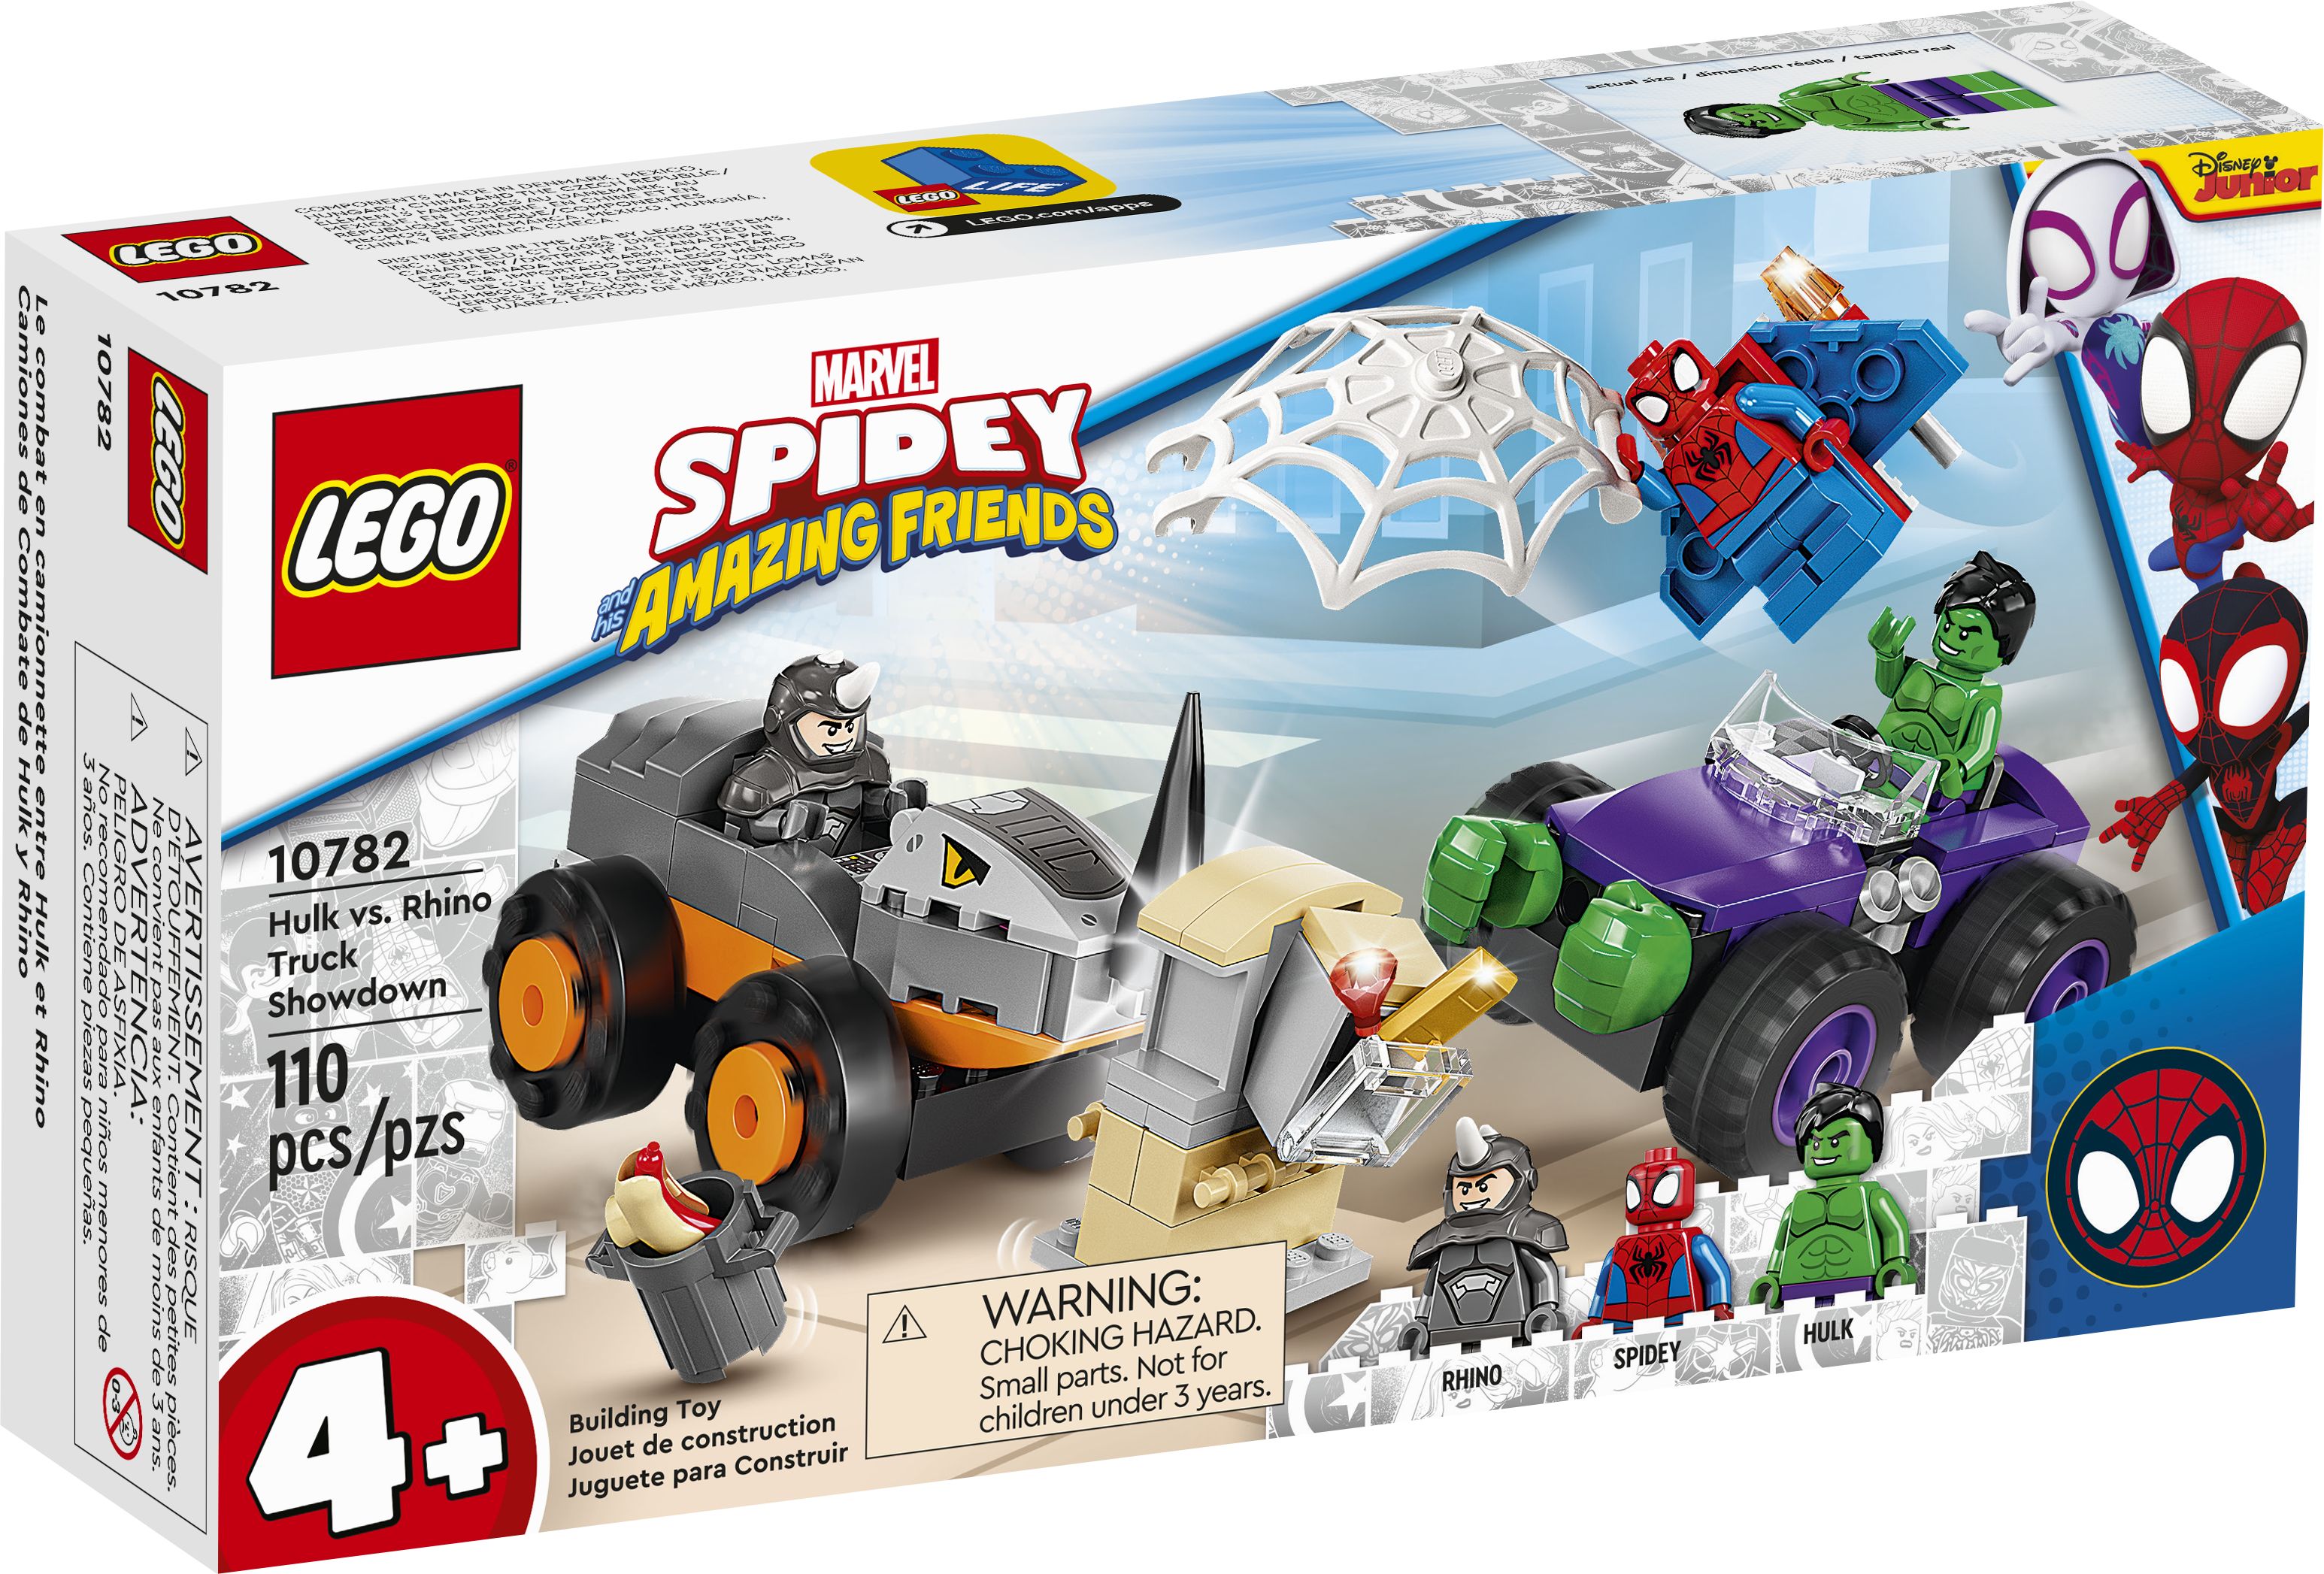 LEGO Super Heroes 10782 Hulks und Rhinos Truck-Duell LEGO_10782_box1_v39.jpg